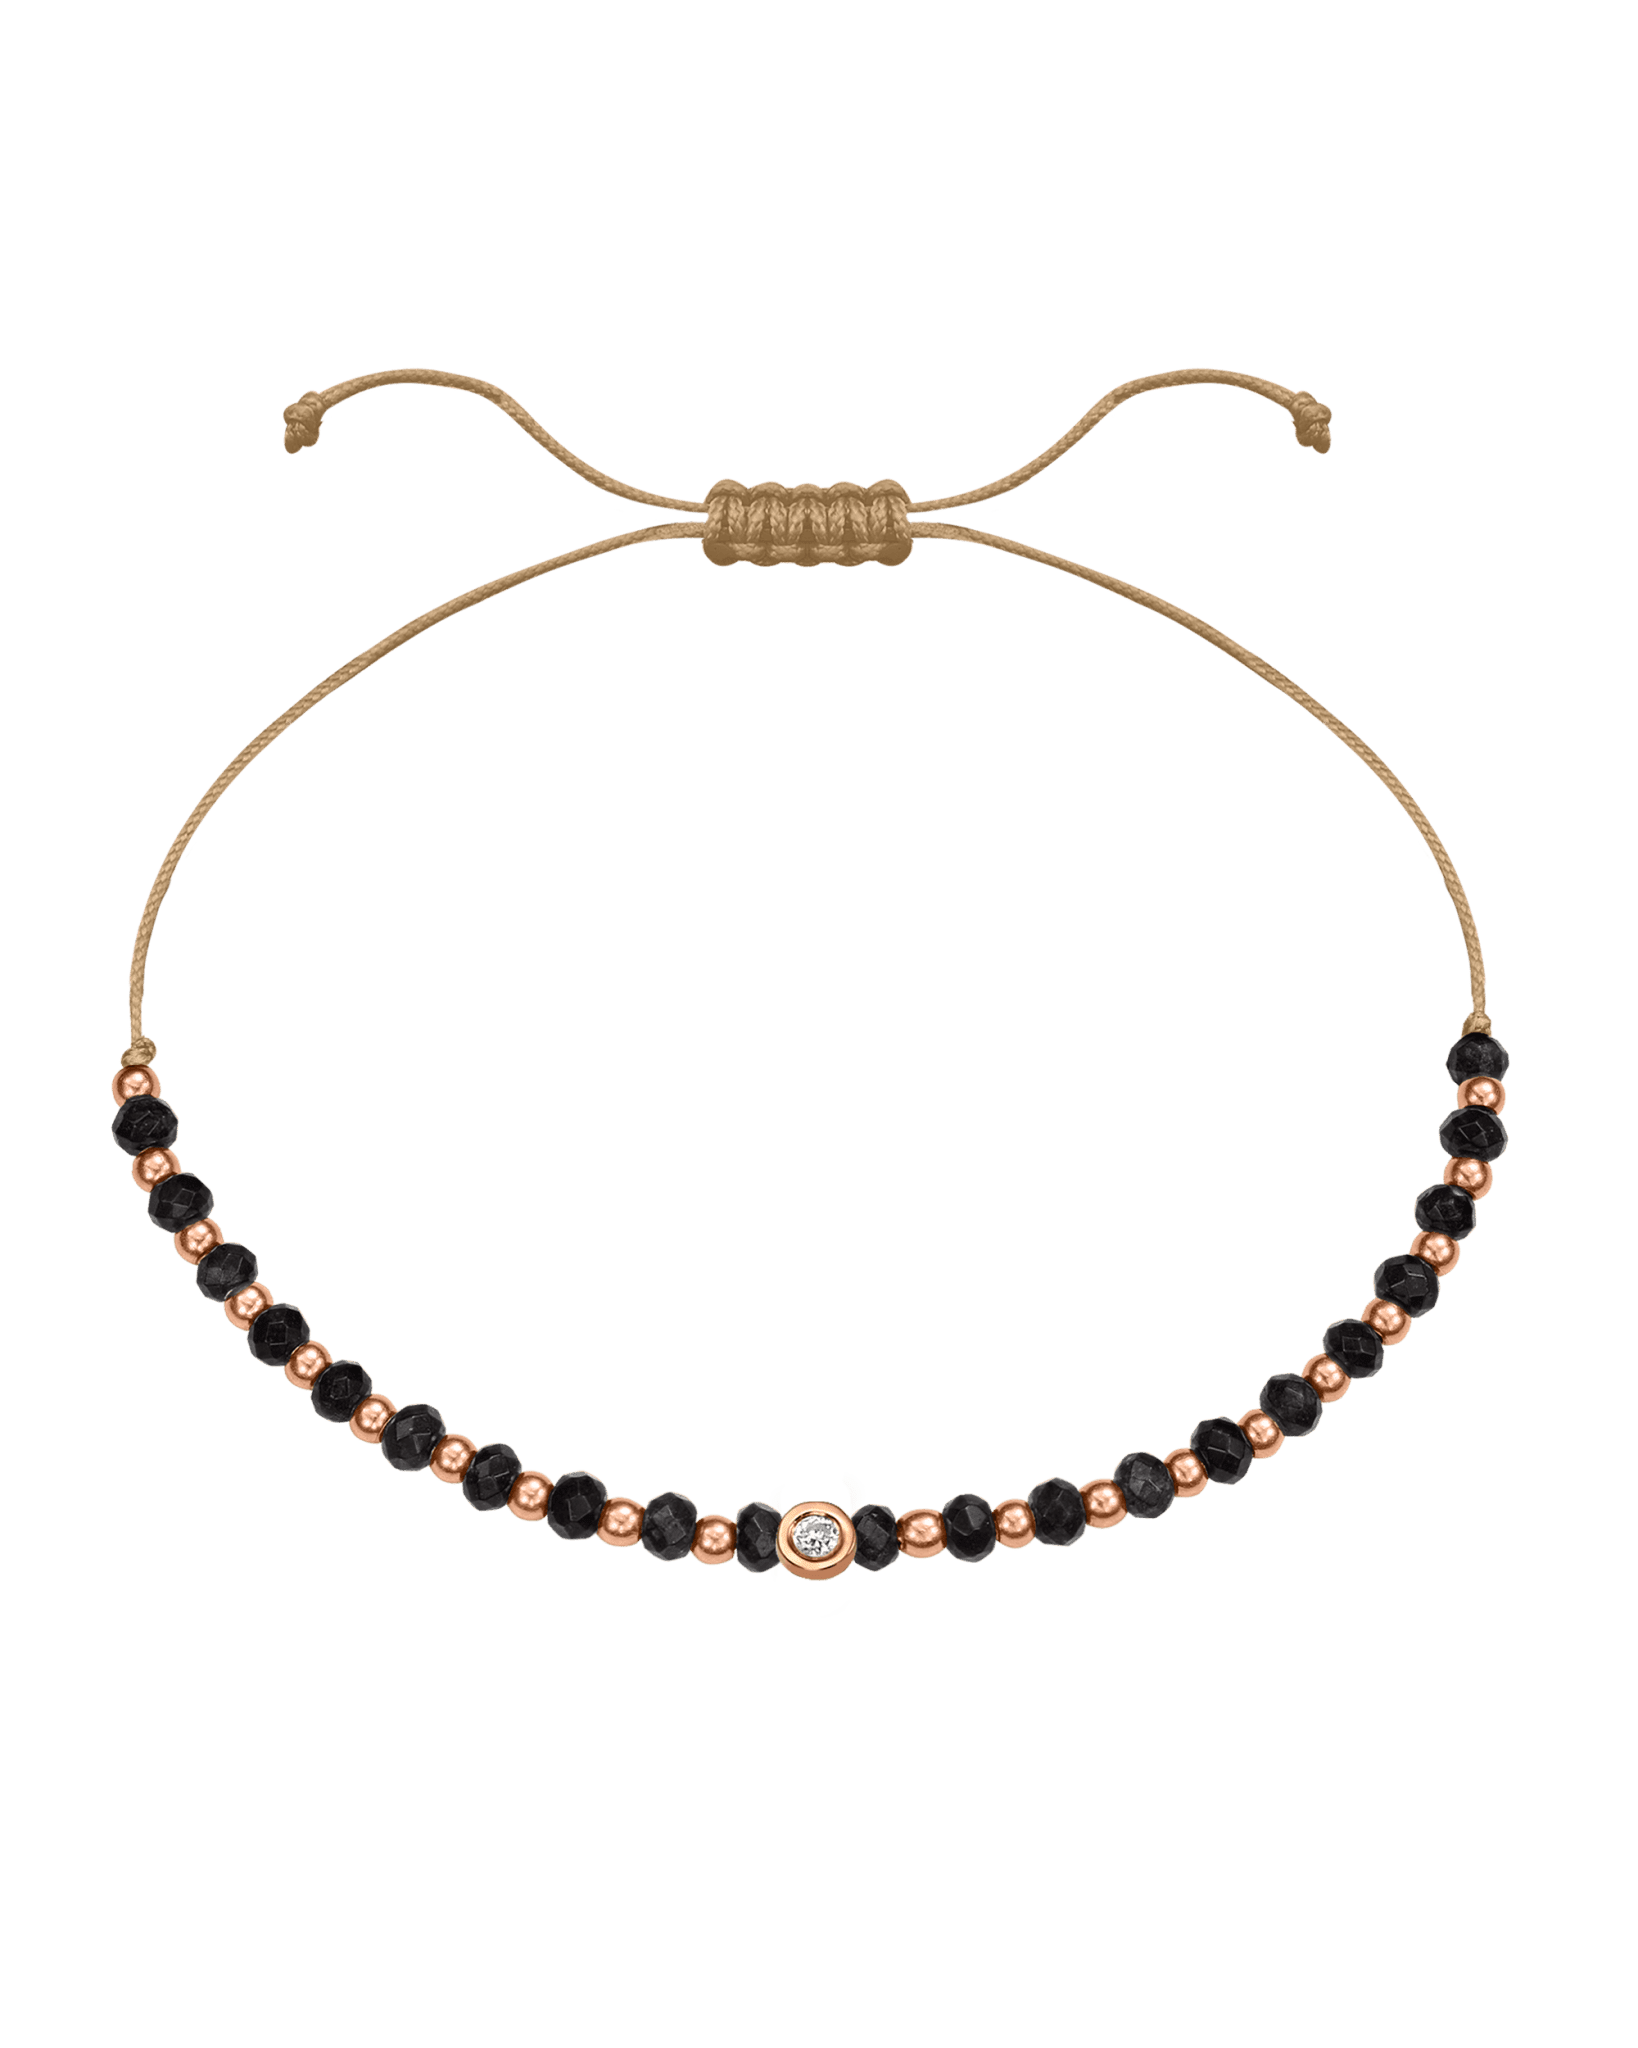 Black Onyx Gemstone String of Love Bracelet for Protection - 14K Rose Gold Bracelets 14K Solid Gold Camel Small: 0.03ct 